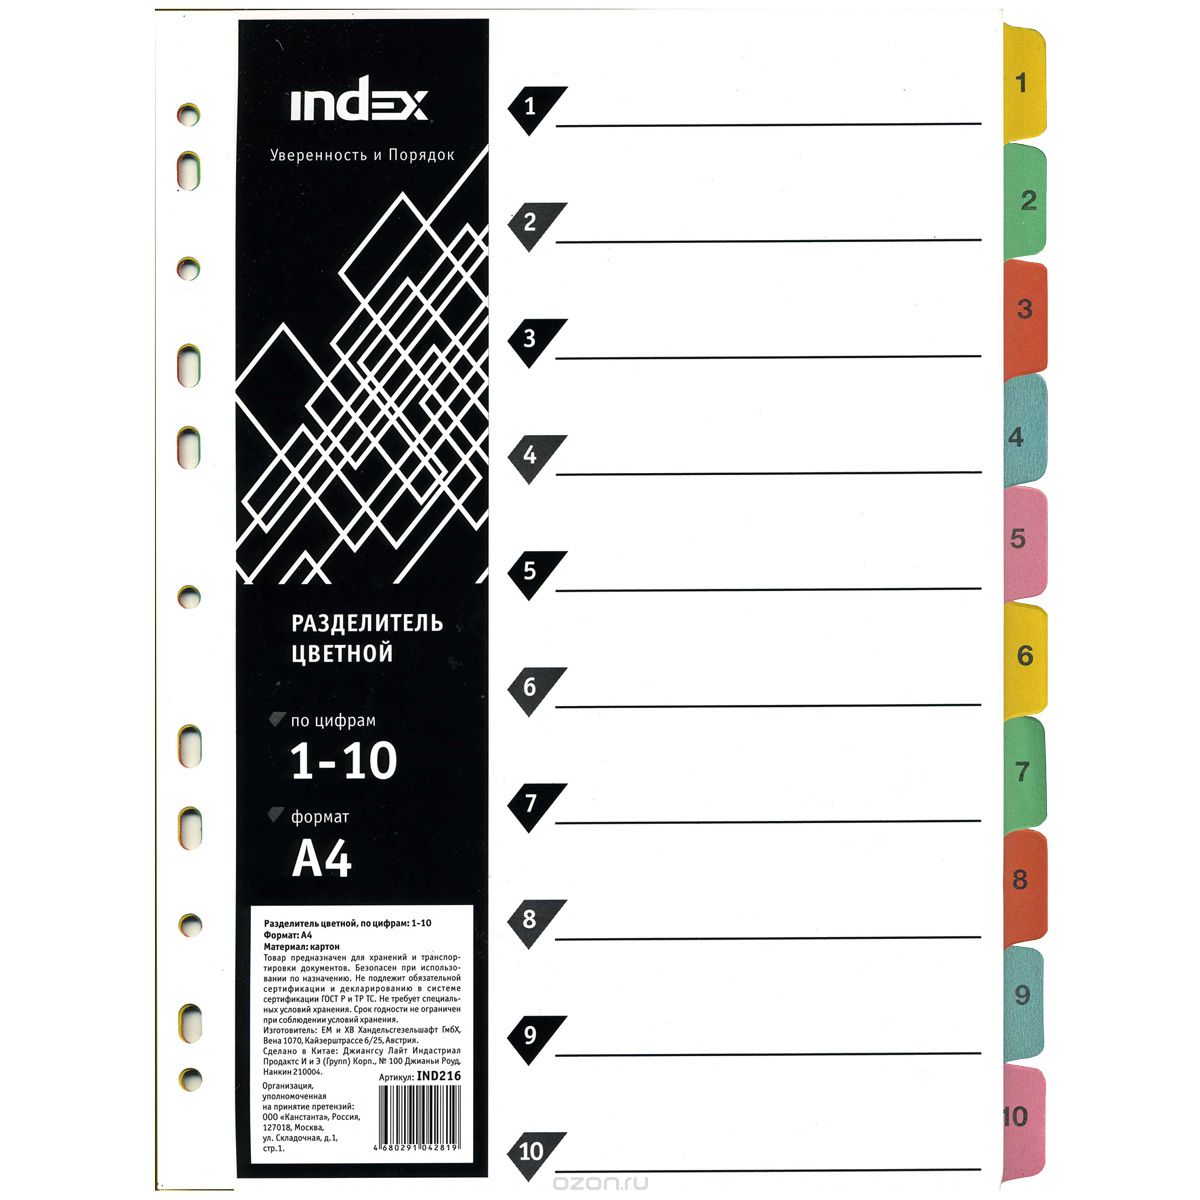 Index    1-10 4